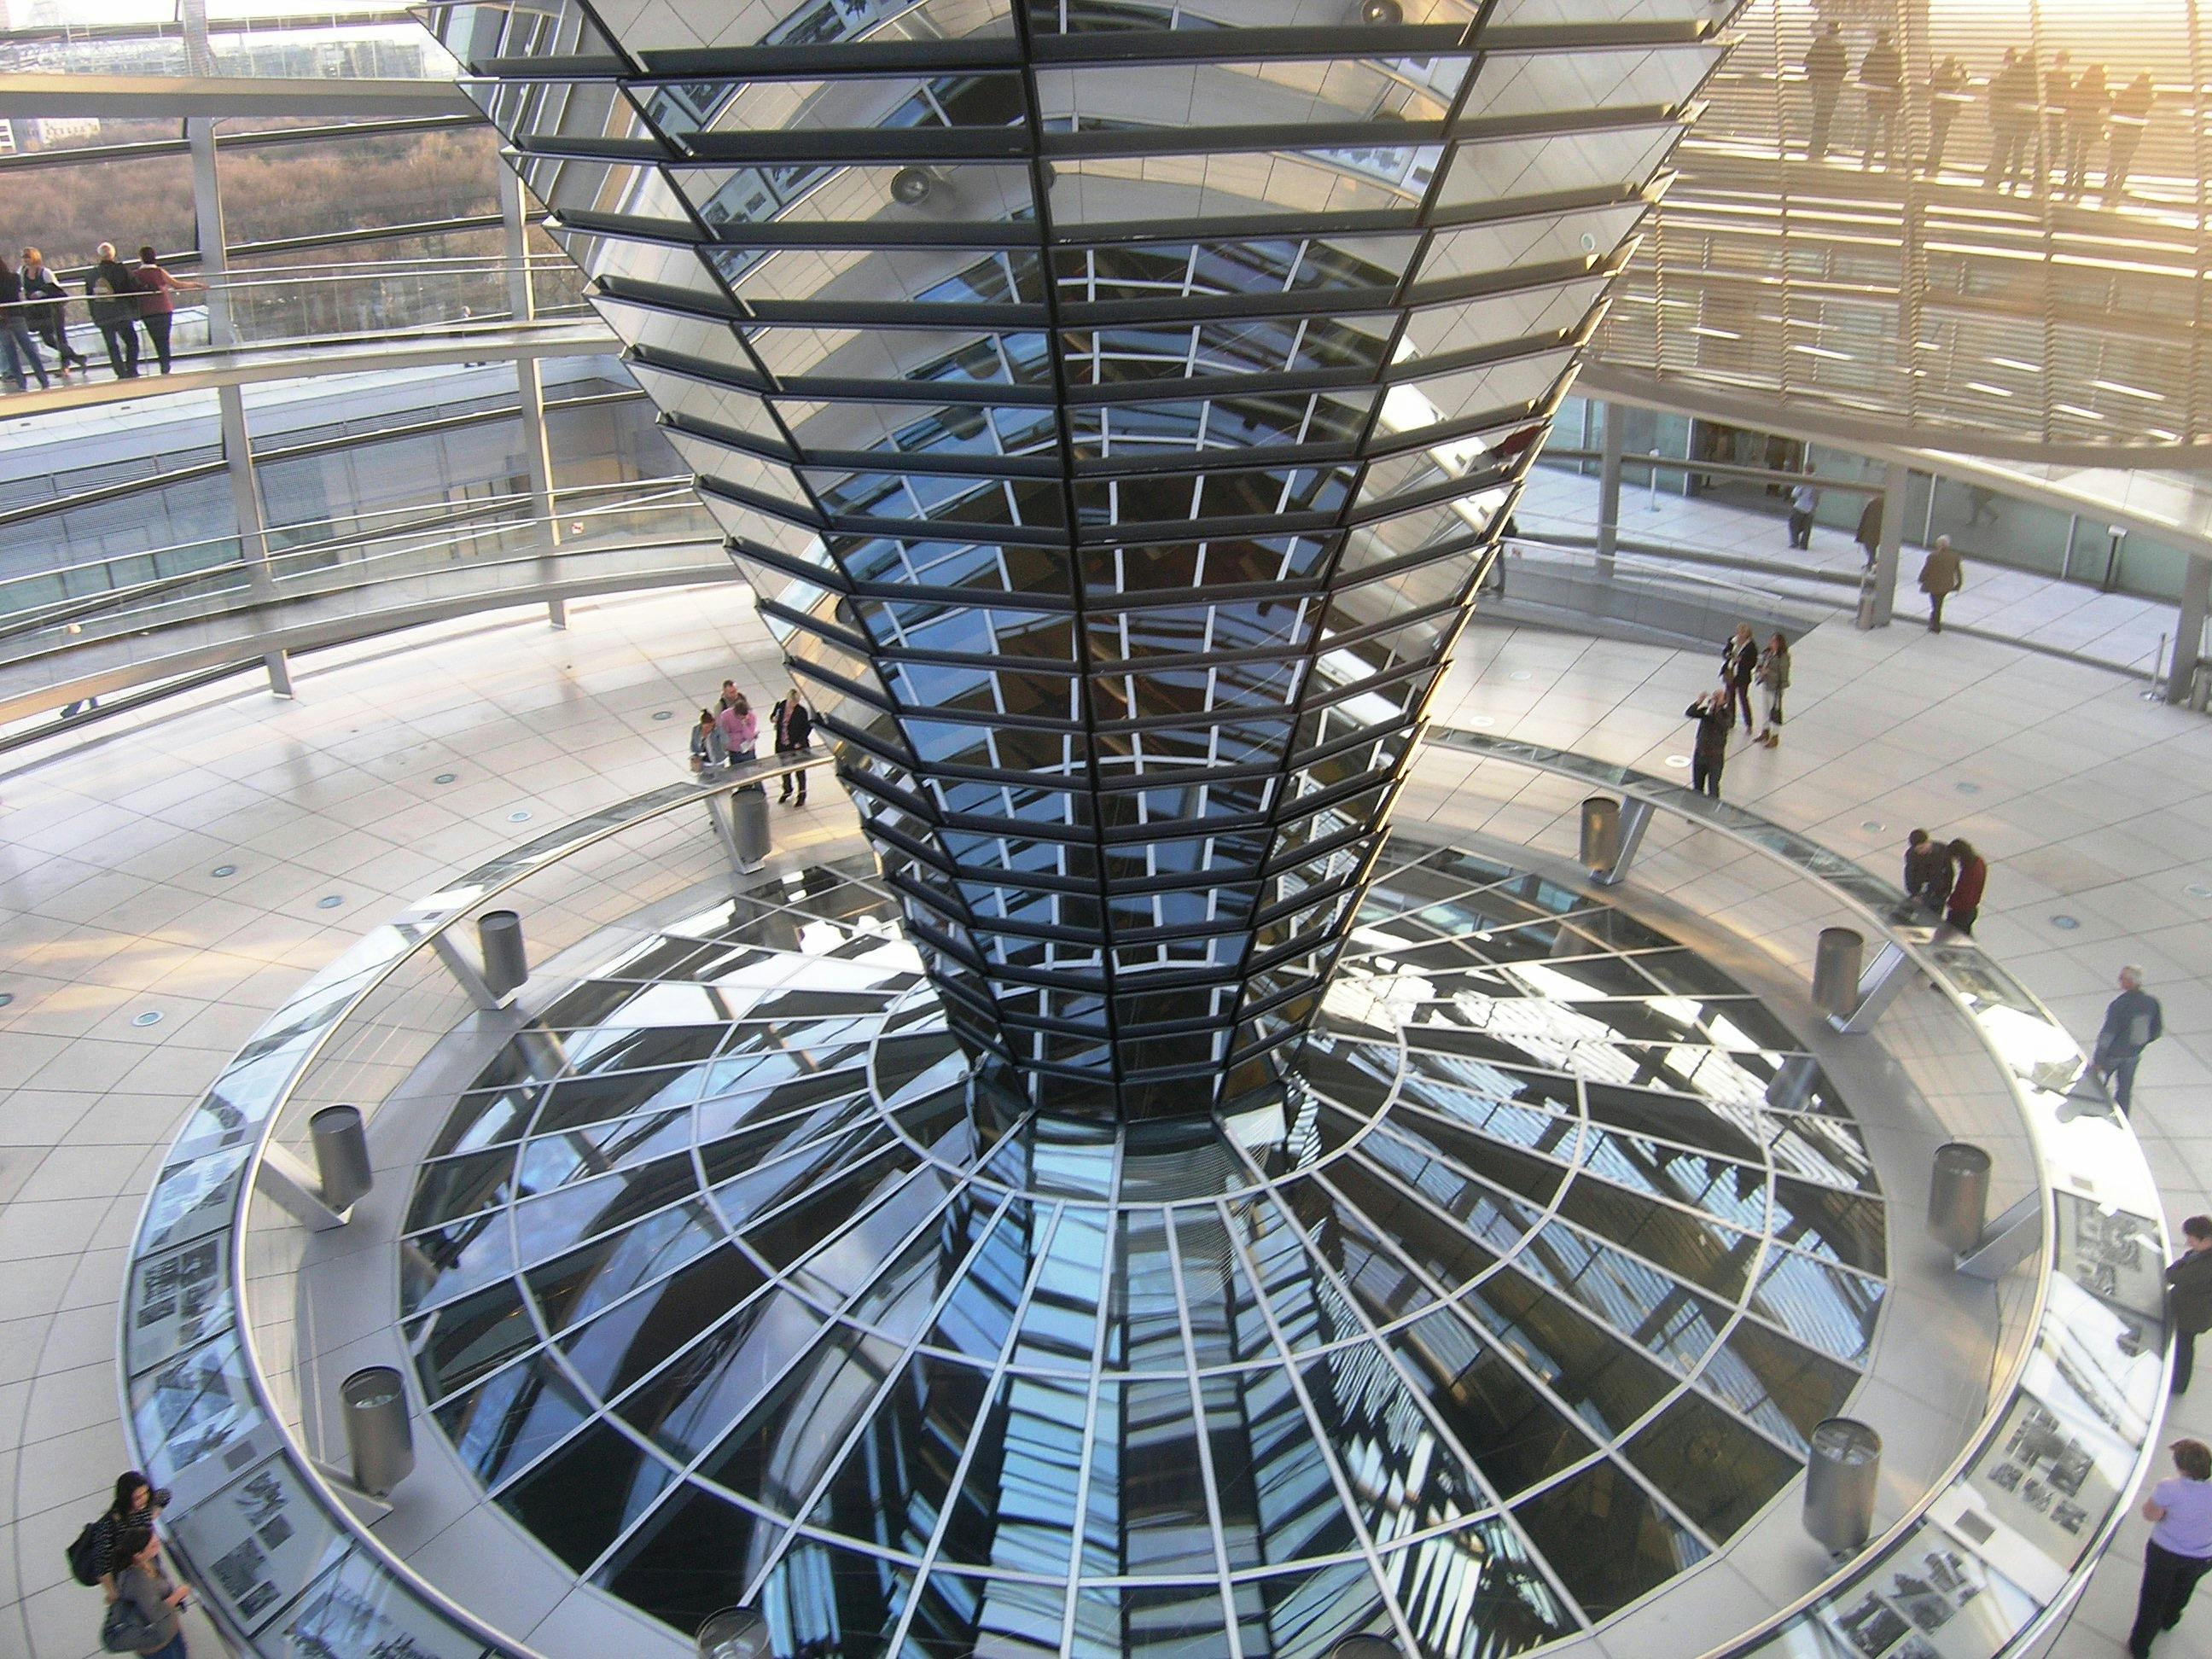 Excursão ao Reichstag de Berlim em alemão com visita ao interior do edifício